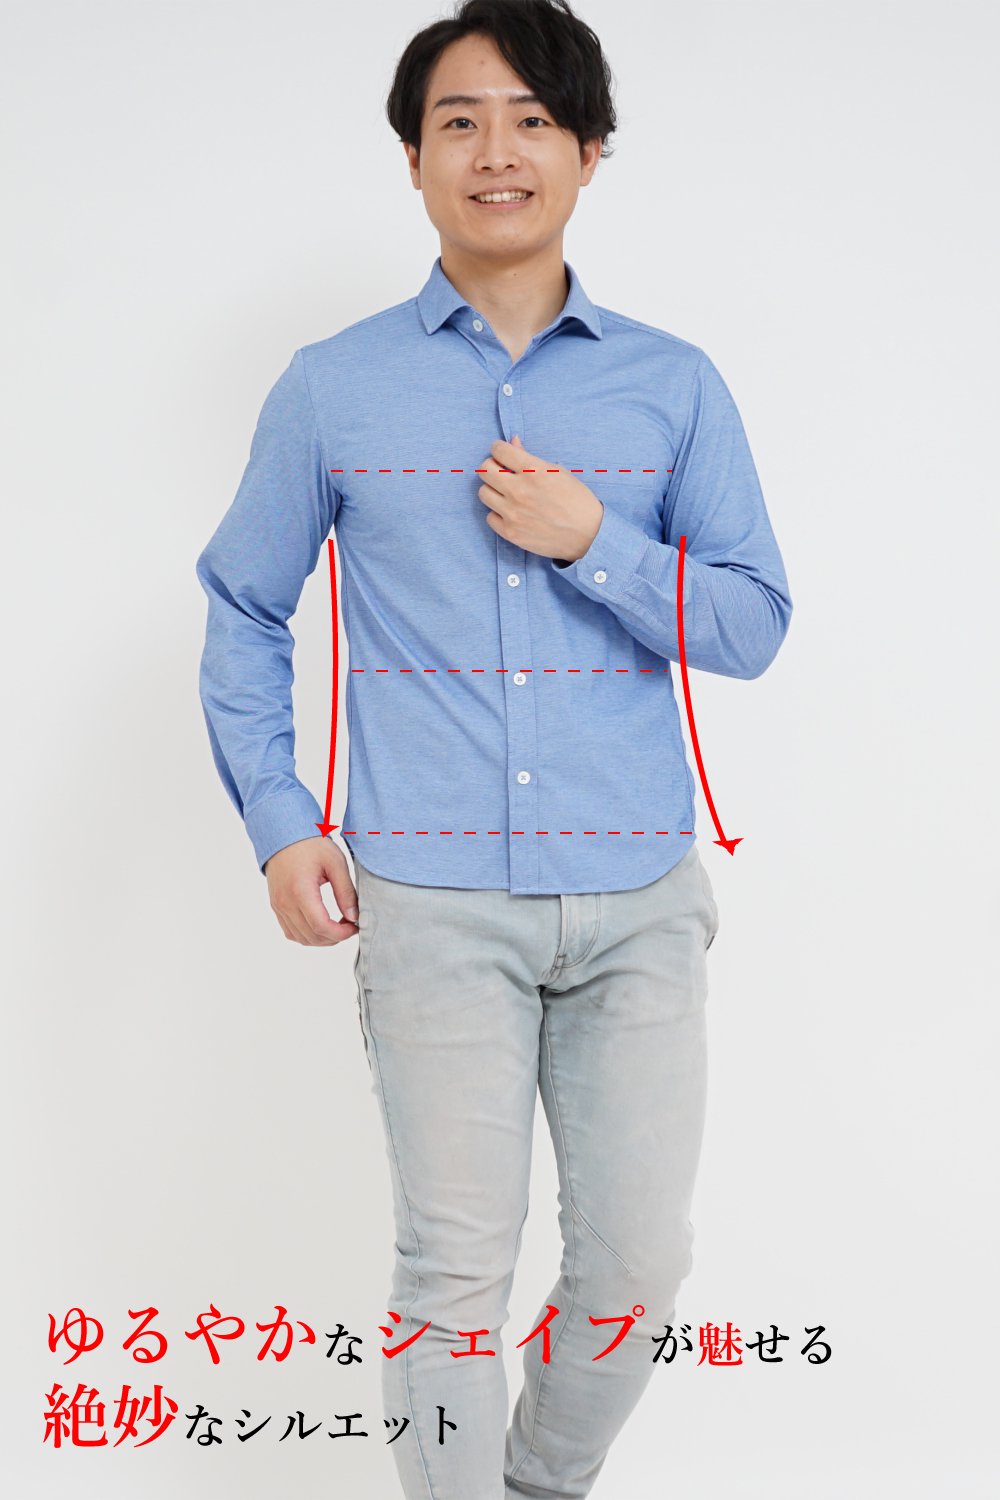 The XS Shirtの身幅がカジュアルでもビジネスカジュアルでも着れる絶妙なシルエットを作っています。